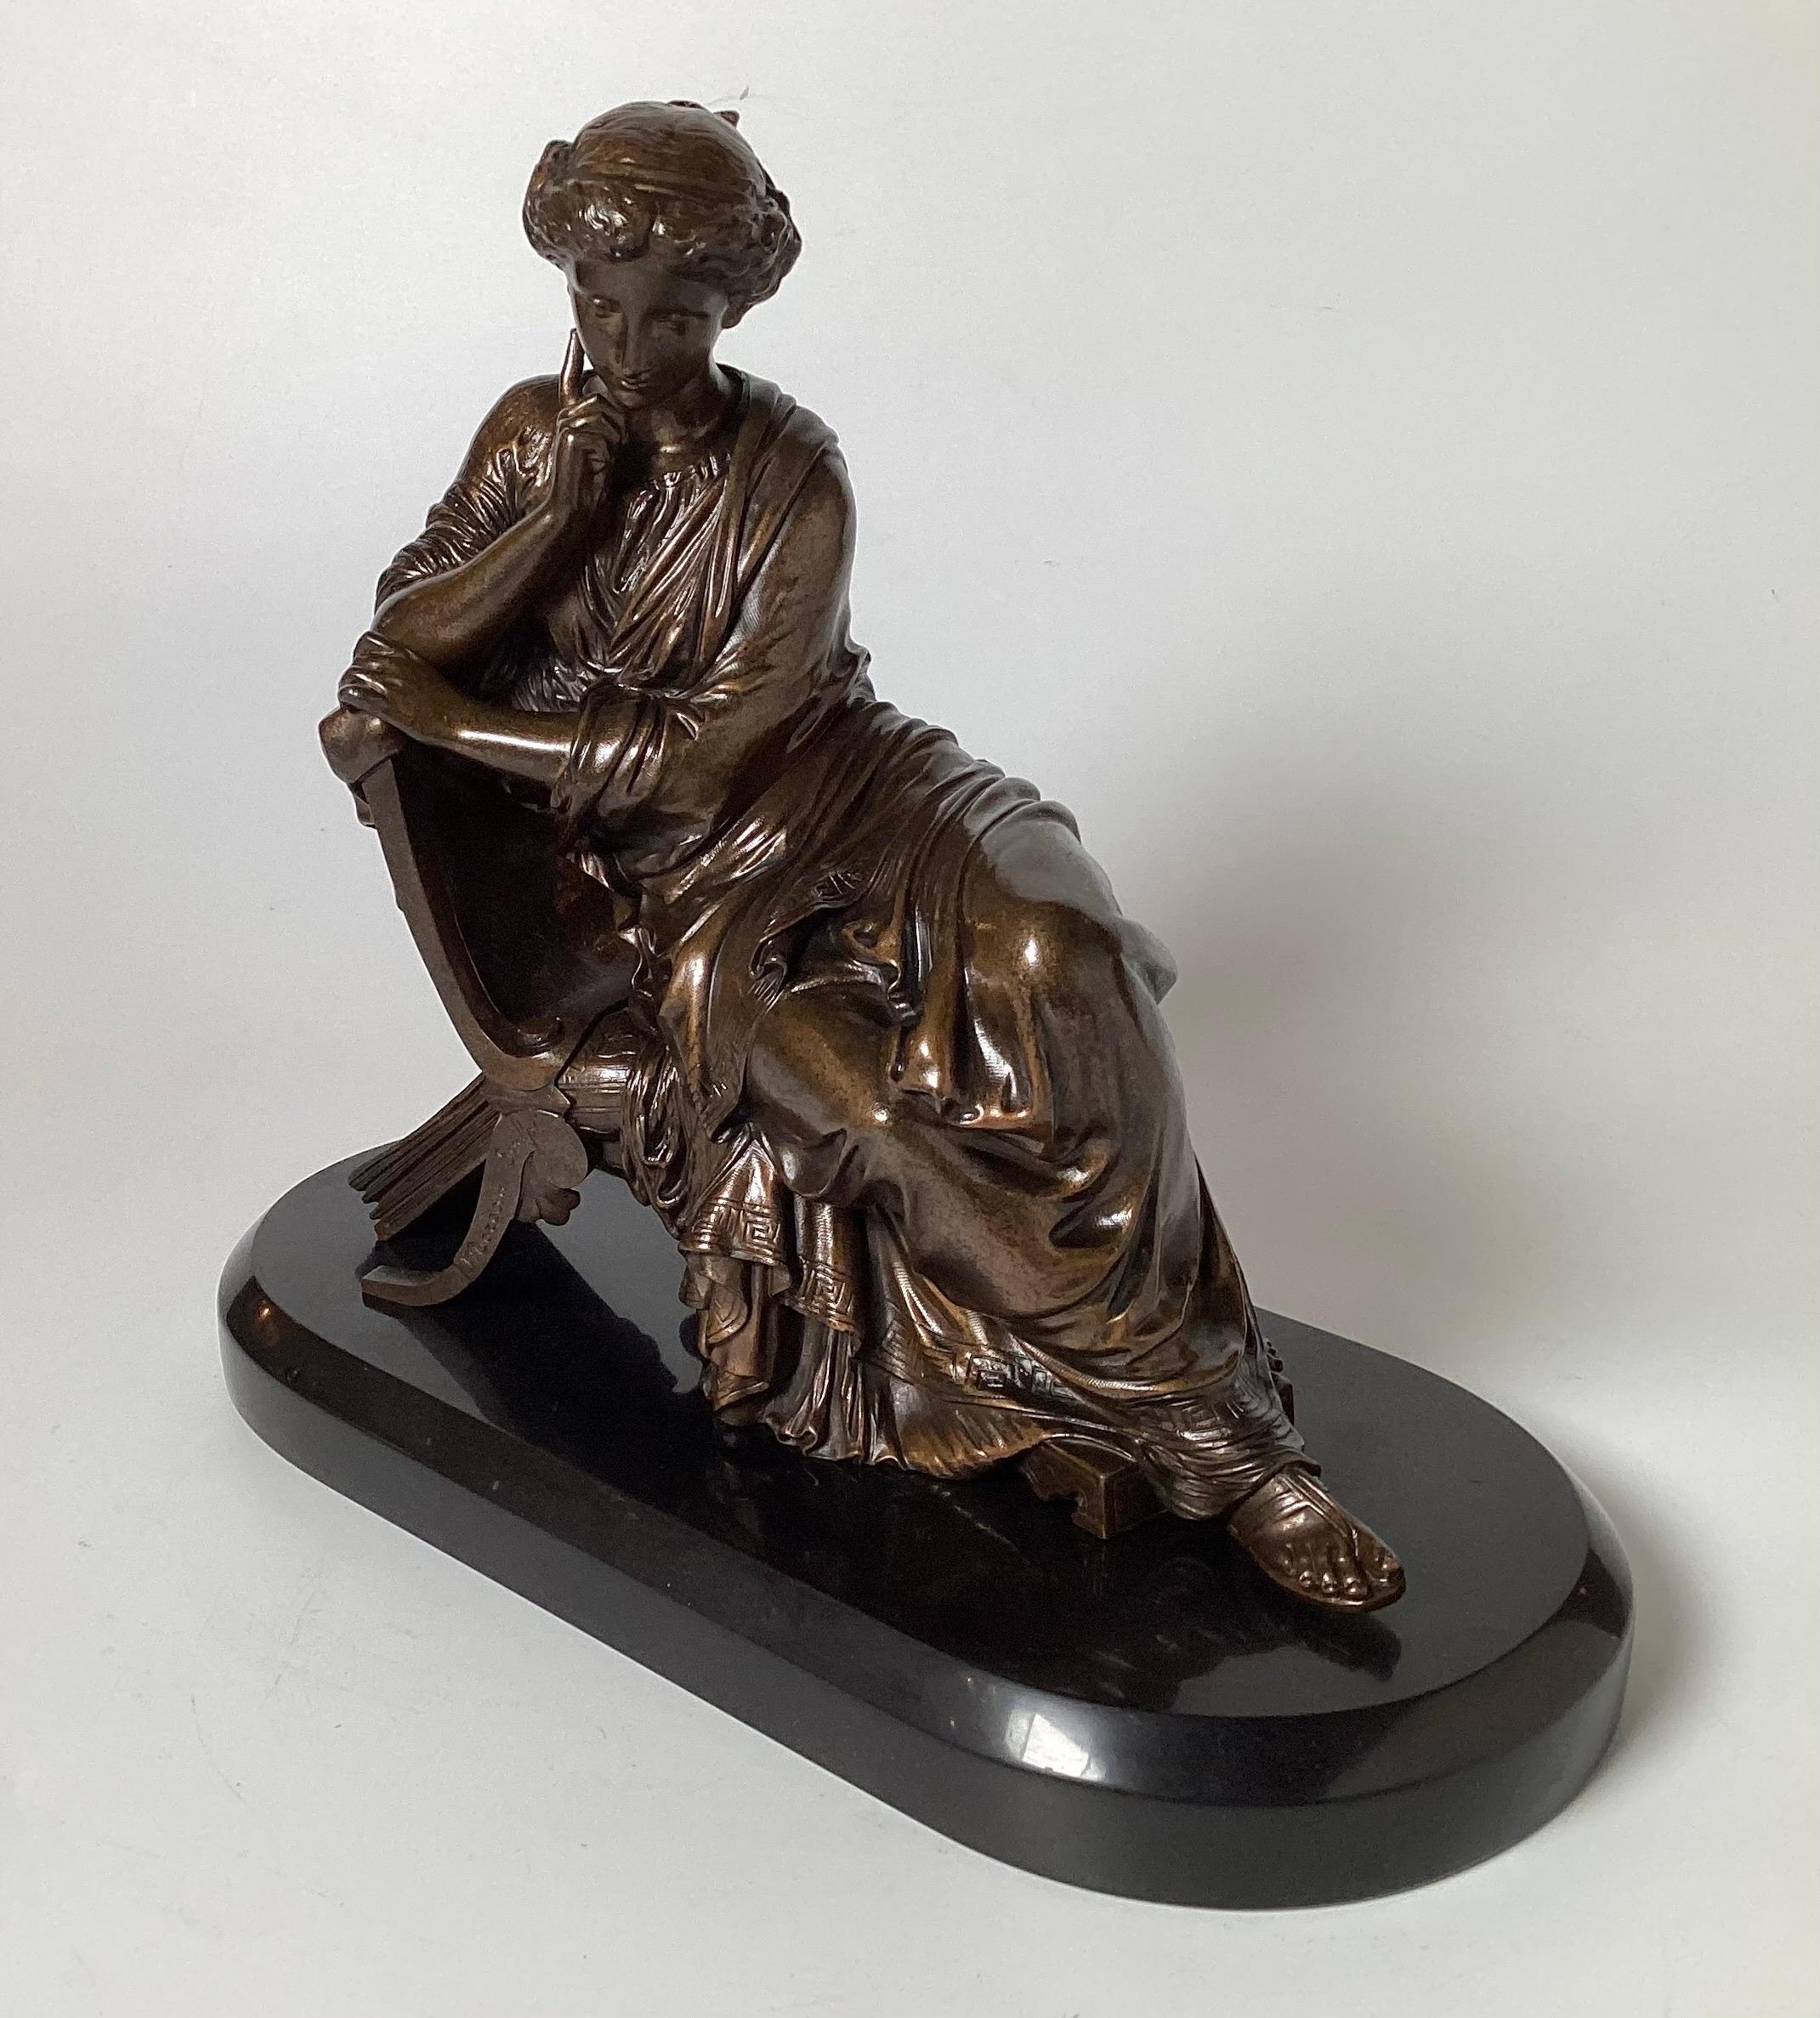 Bronzestatue mit dunkler Patinierung, die eine sitzende klassische Dame nach James Pradier (1790-1852) darstellt. Sie ist auf einem ovalen Sockel aus poliertem Schiefermarmor aufgestellt. Diese Bronze ist von Sappho inspiriert, einer von Pradier